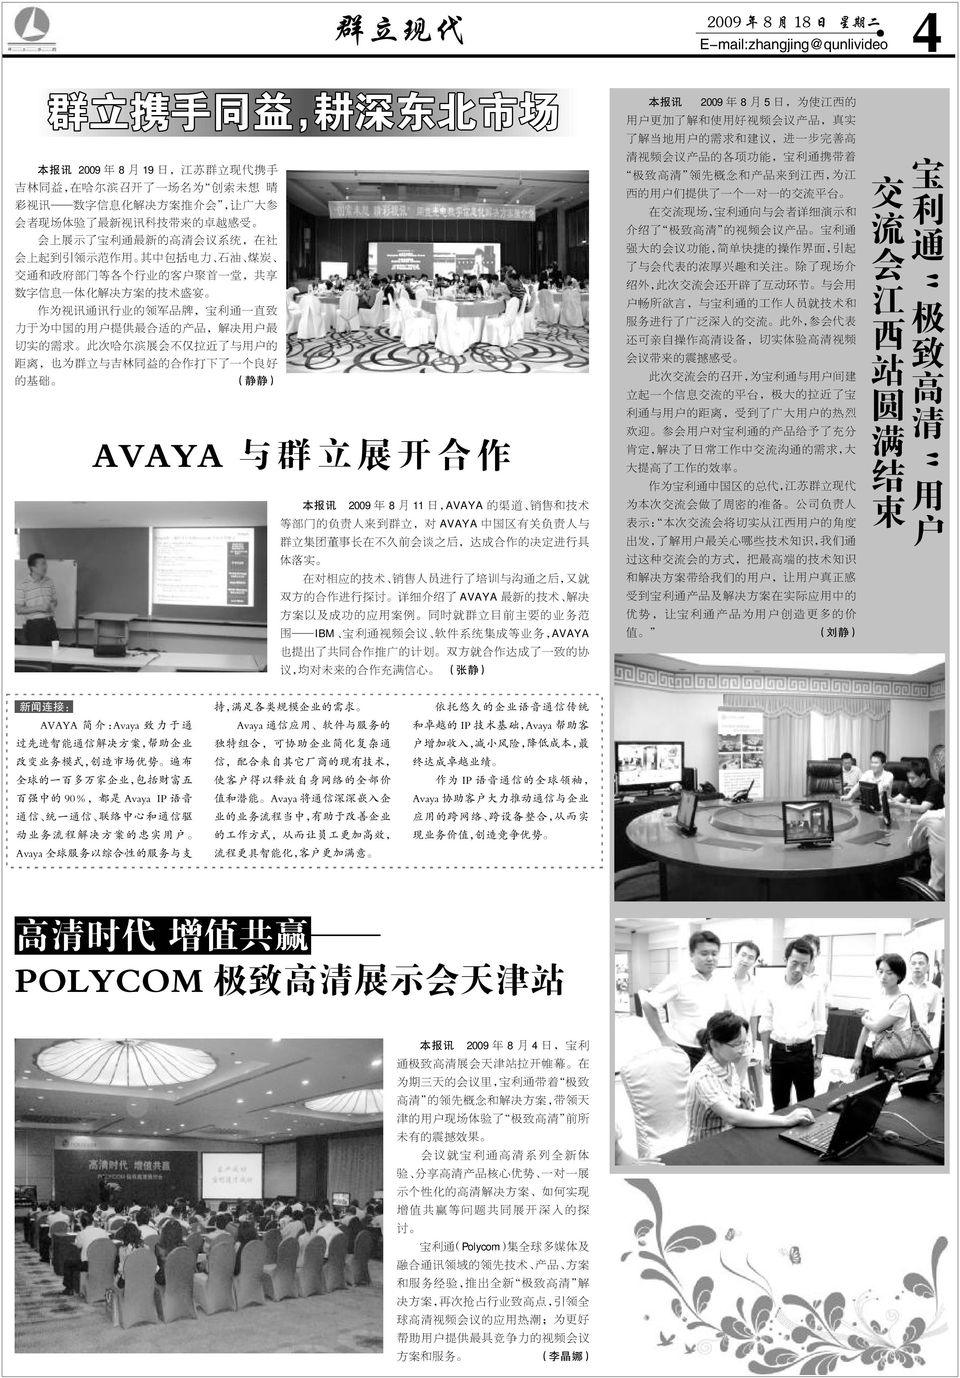 通 一 直 致 力 于 为 中 国 的 用 户 提 供 最 合 适 的 产 品, 解 决 用 户 最 切 实 的 需 求 此 次 哈 尔 滨 展 会 不 仅 拉 近 了 与 用 户 的 距 离, 也 为 群 立 与 吉 林 同 益 的 合 作 打 下 了 一 个 良 好 的 基 础 ( 静 静 ) AVAYA 与 群 立 展 开 合 作 2009 年 8 月 11 日,AVAYA 的 渠 道 销